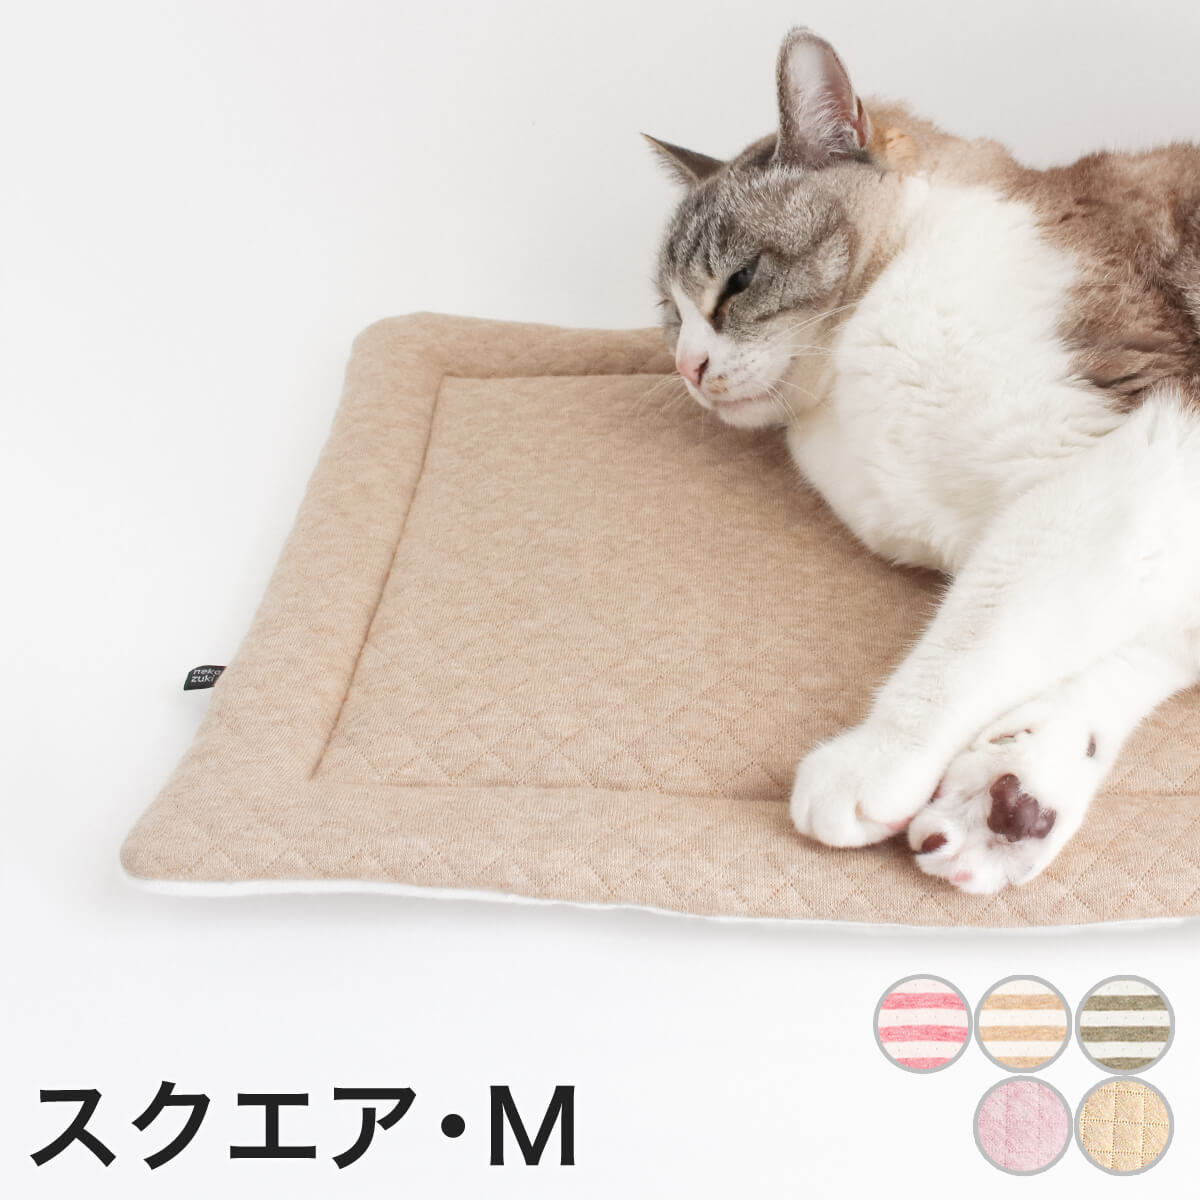 マット 猫 ベッド ozabu おざぶ スクエア M 日本製